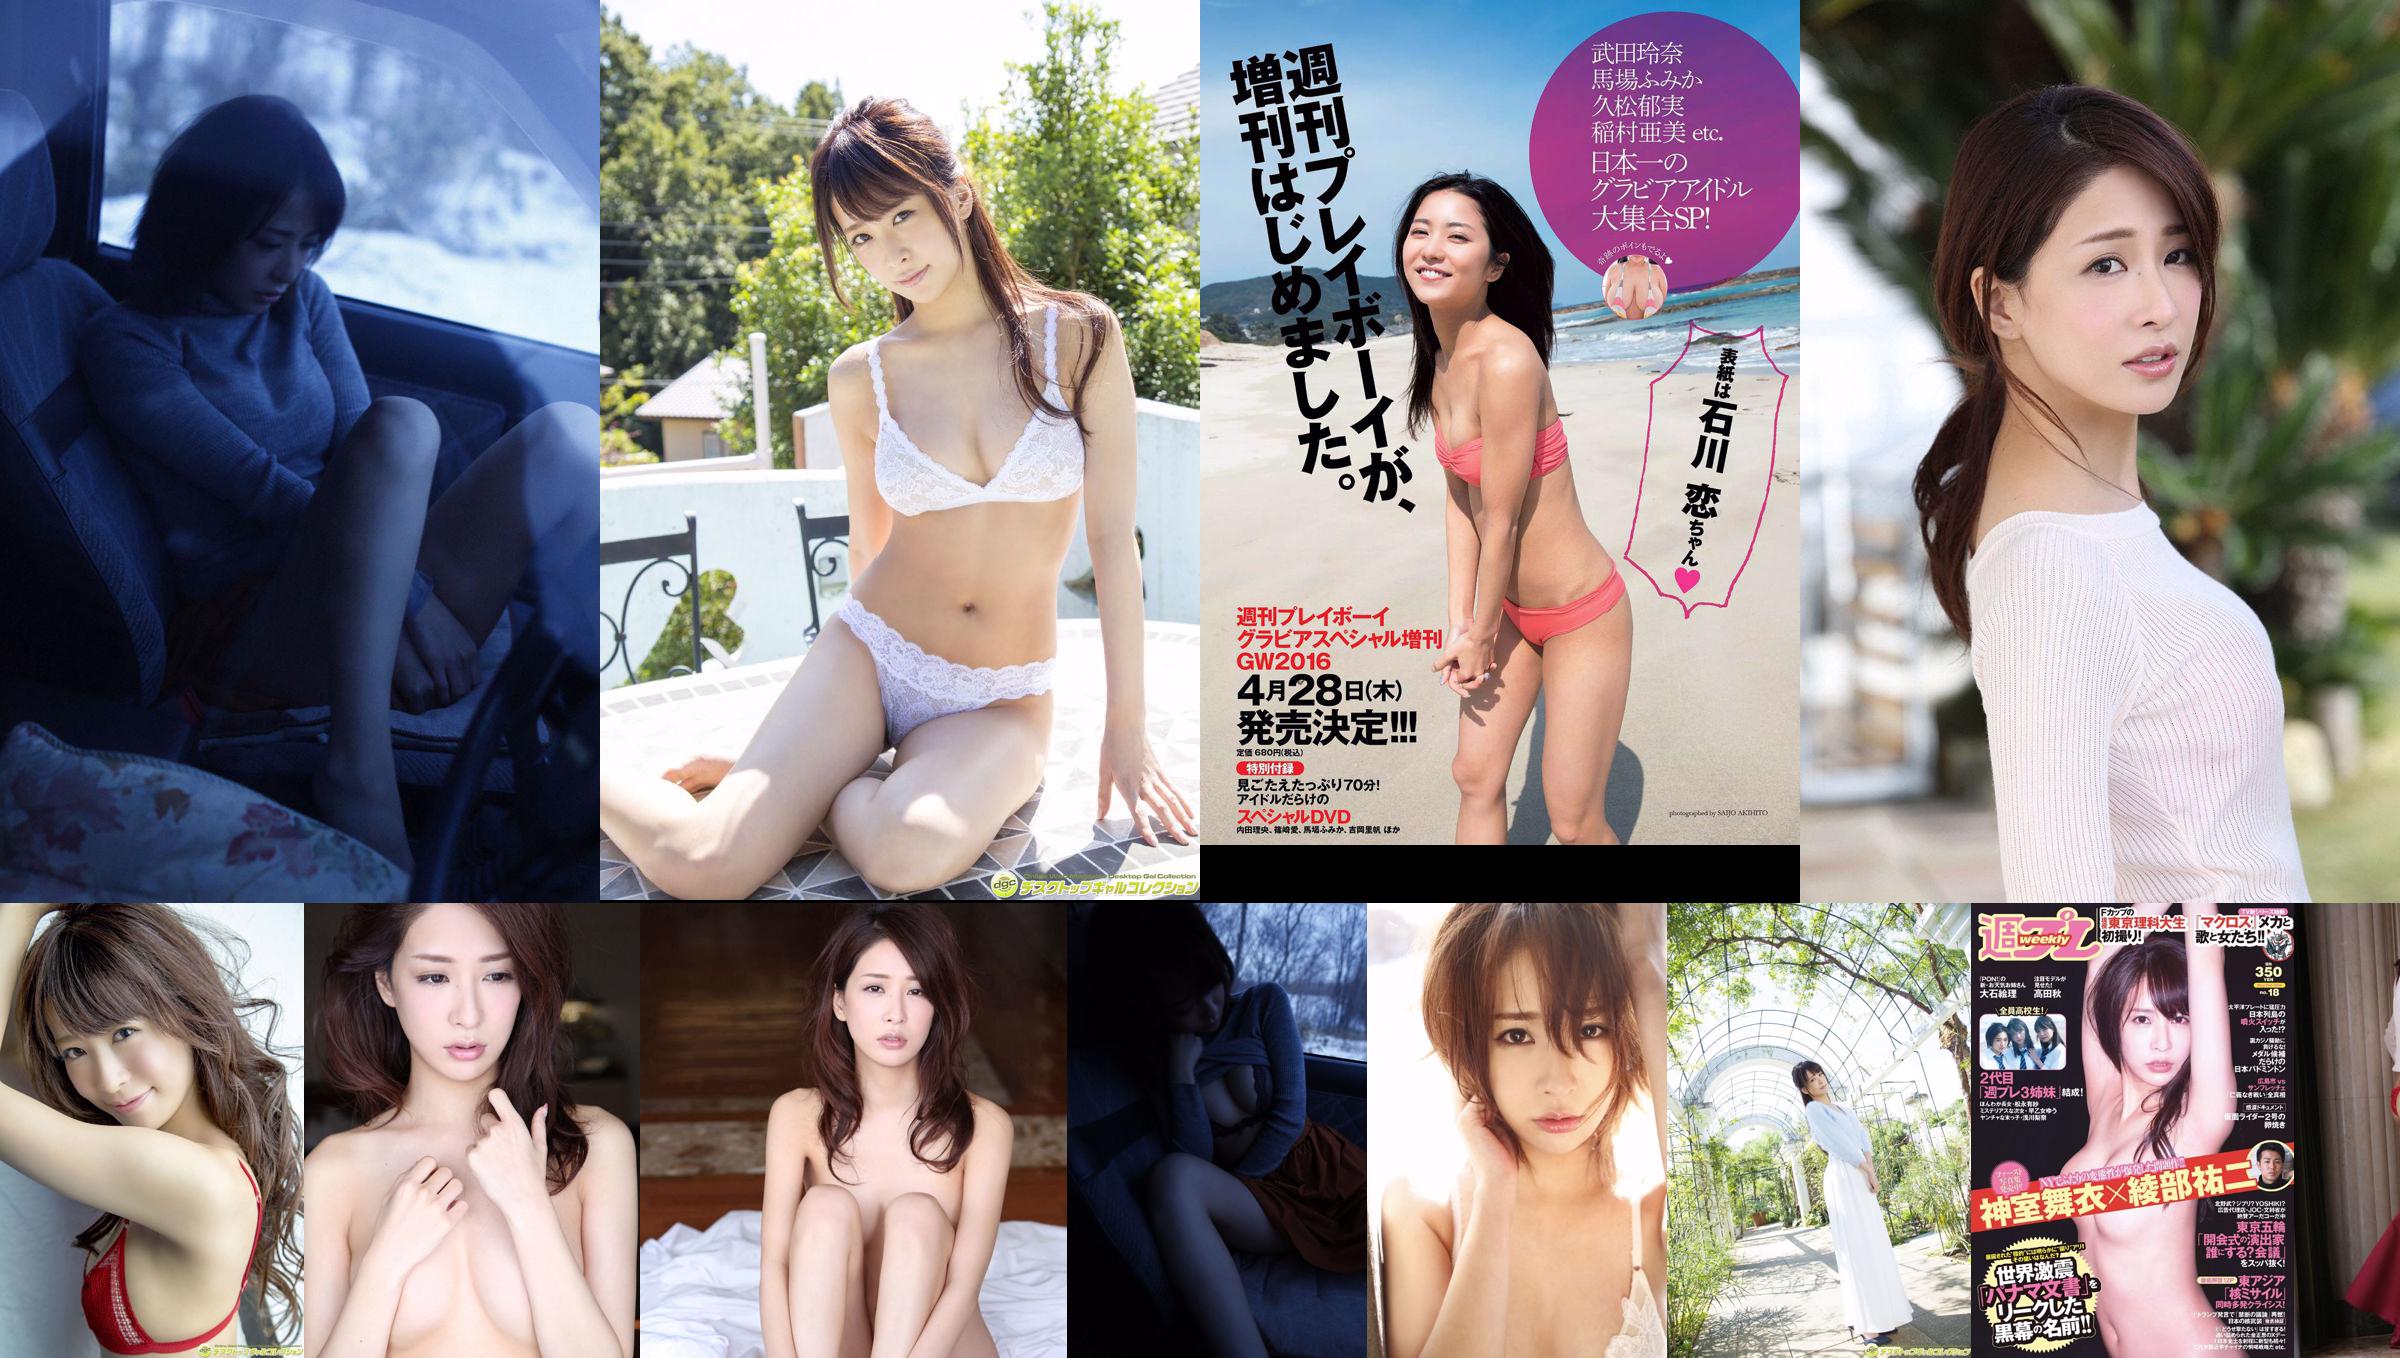 Mai Kamuro Arisa Matsunaga Yu Saotome Rina Asakawa Shu Takada Ayana Takeda Eri Oishi [Wöchentlicher Playboy] 2016 Nr. 18 Foto No.fe6f4c Seite 3